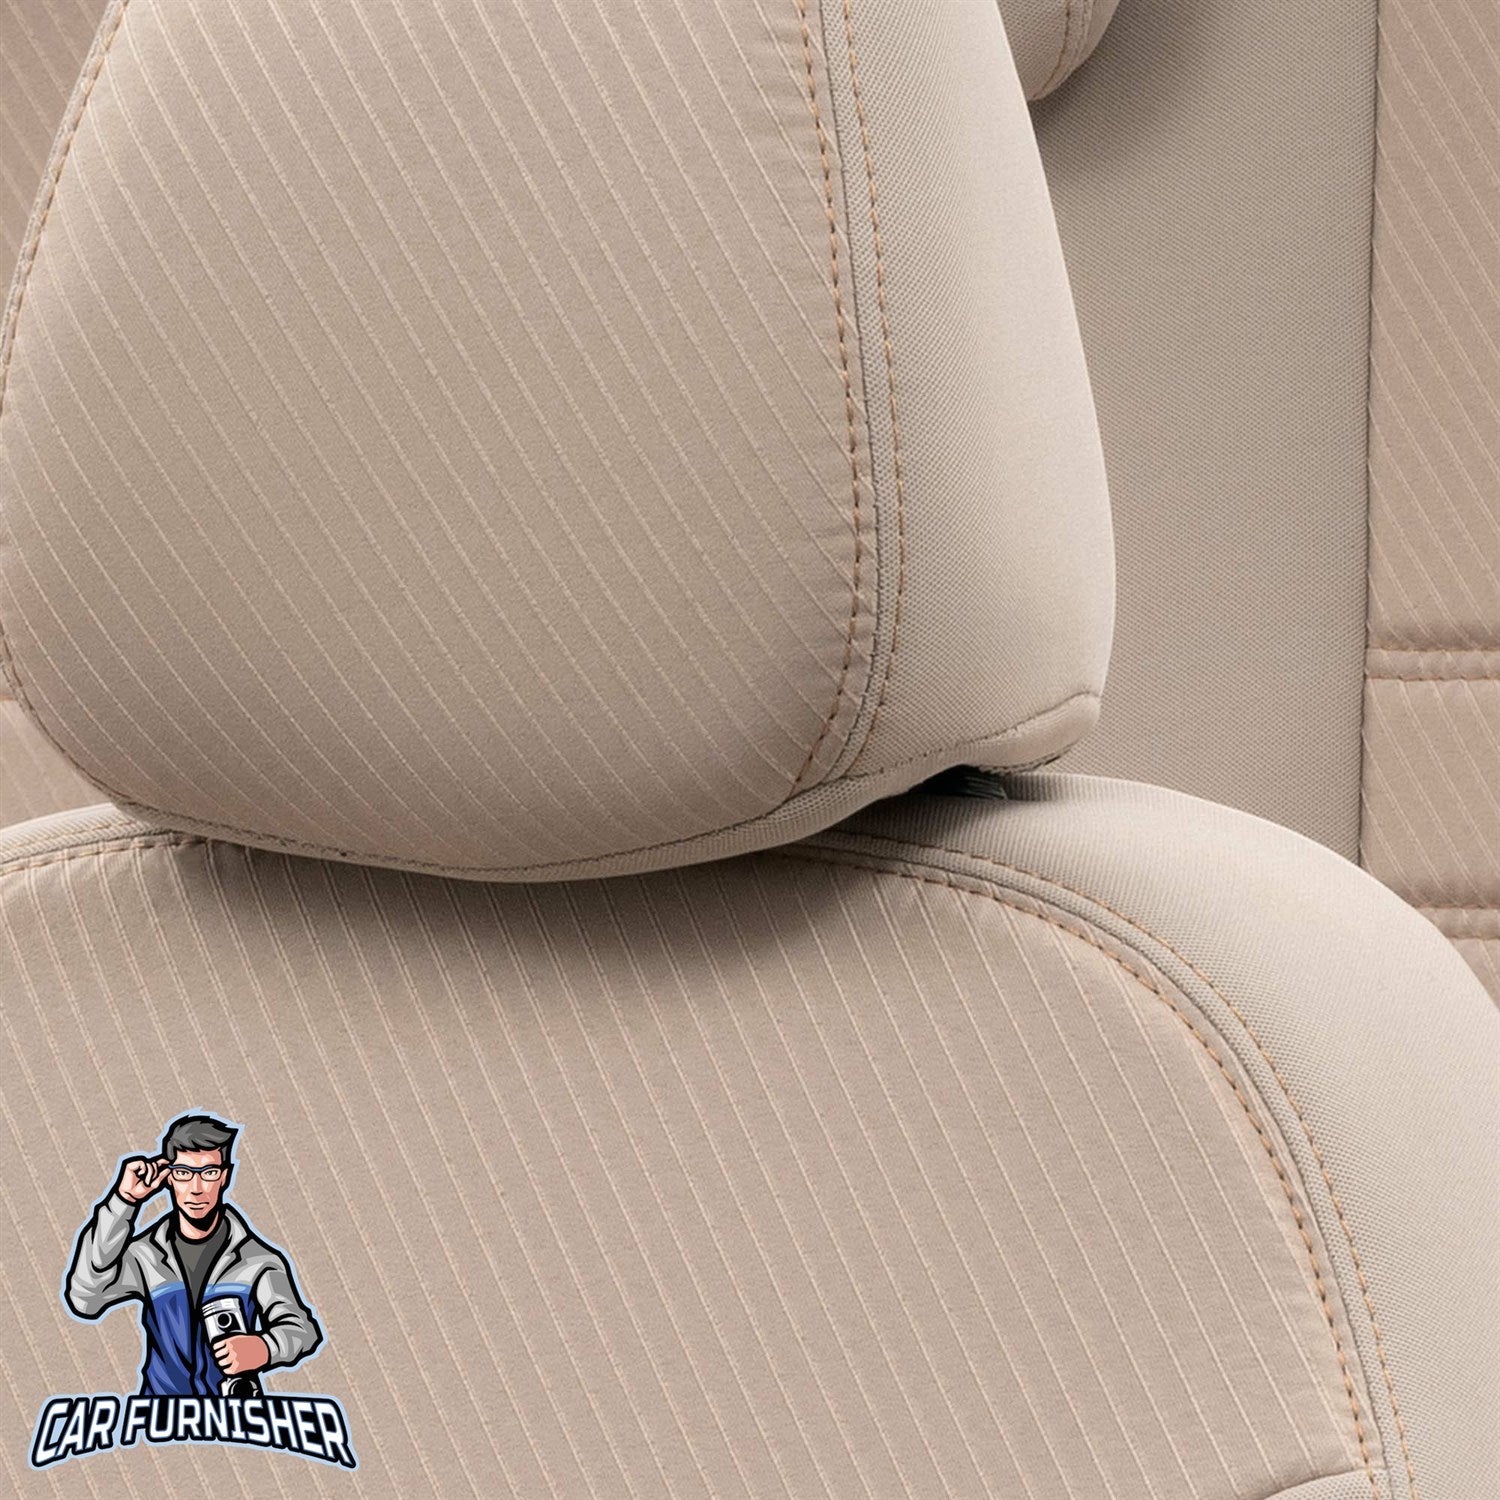 Volkswagen Bora Seat Cover Original Jacquard Design Dark Beige Jacquard Fabric